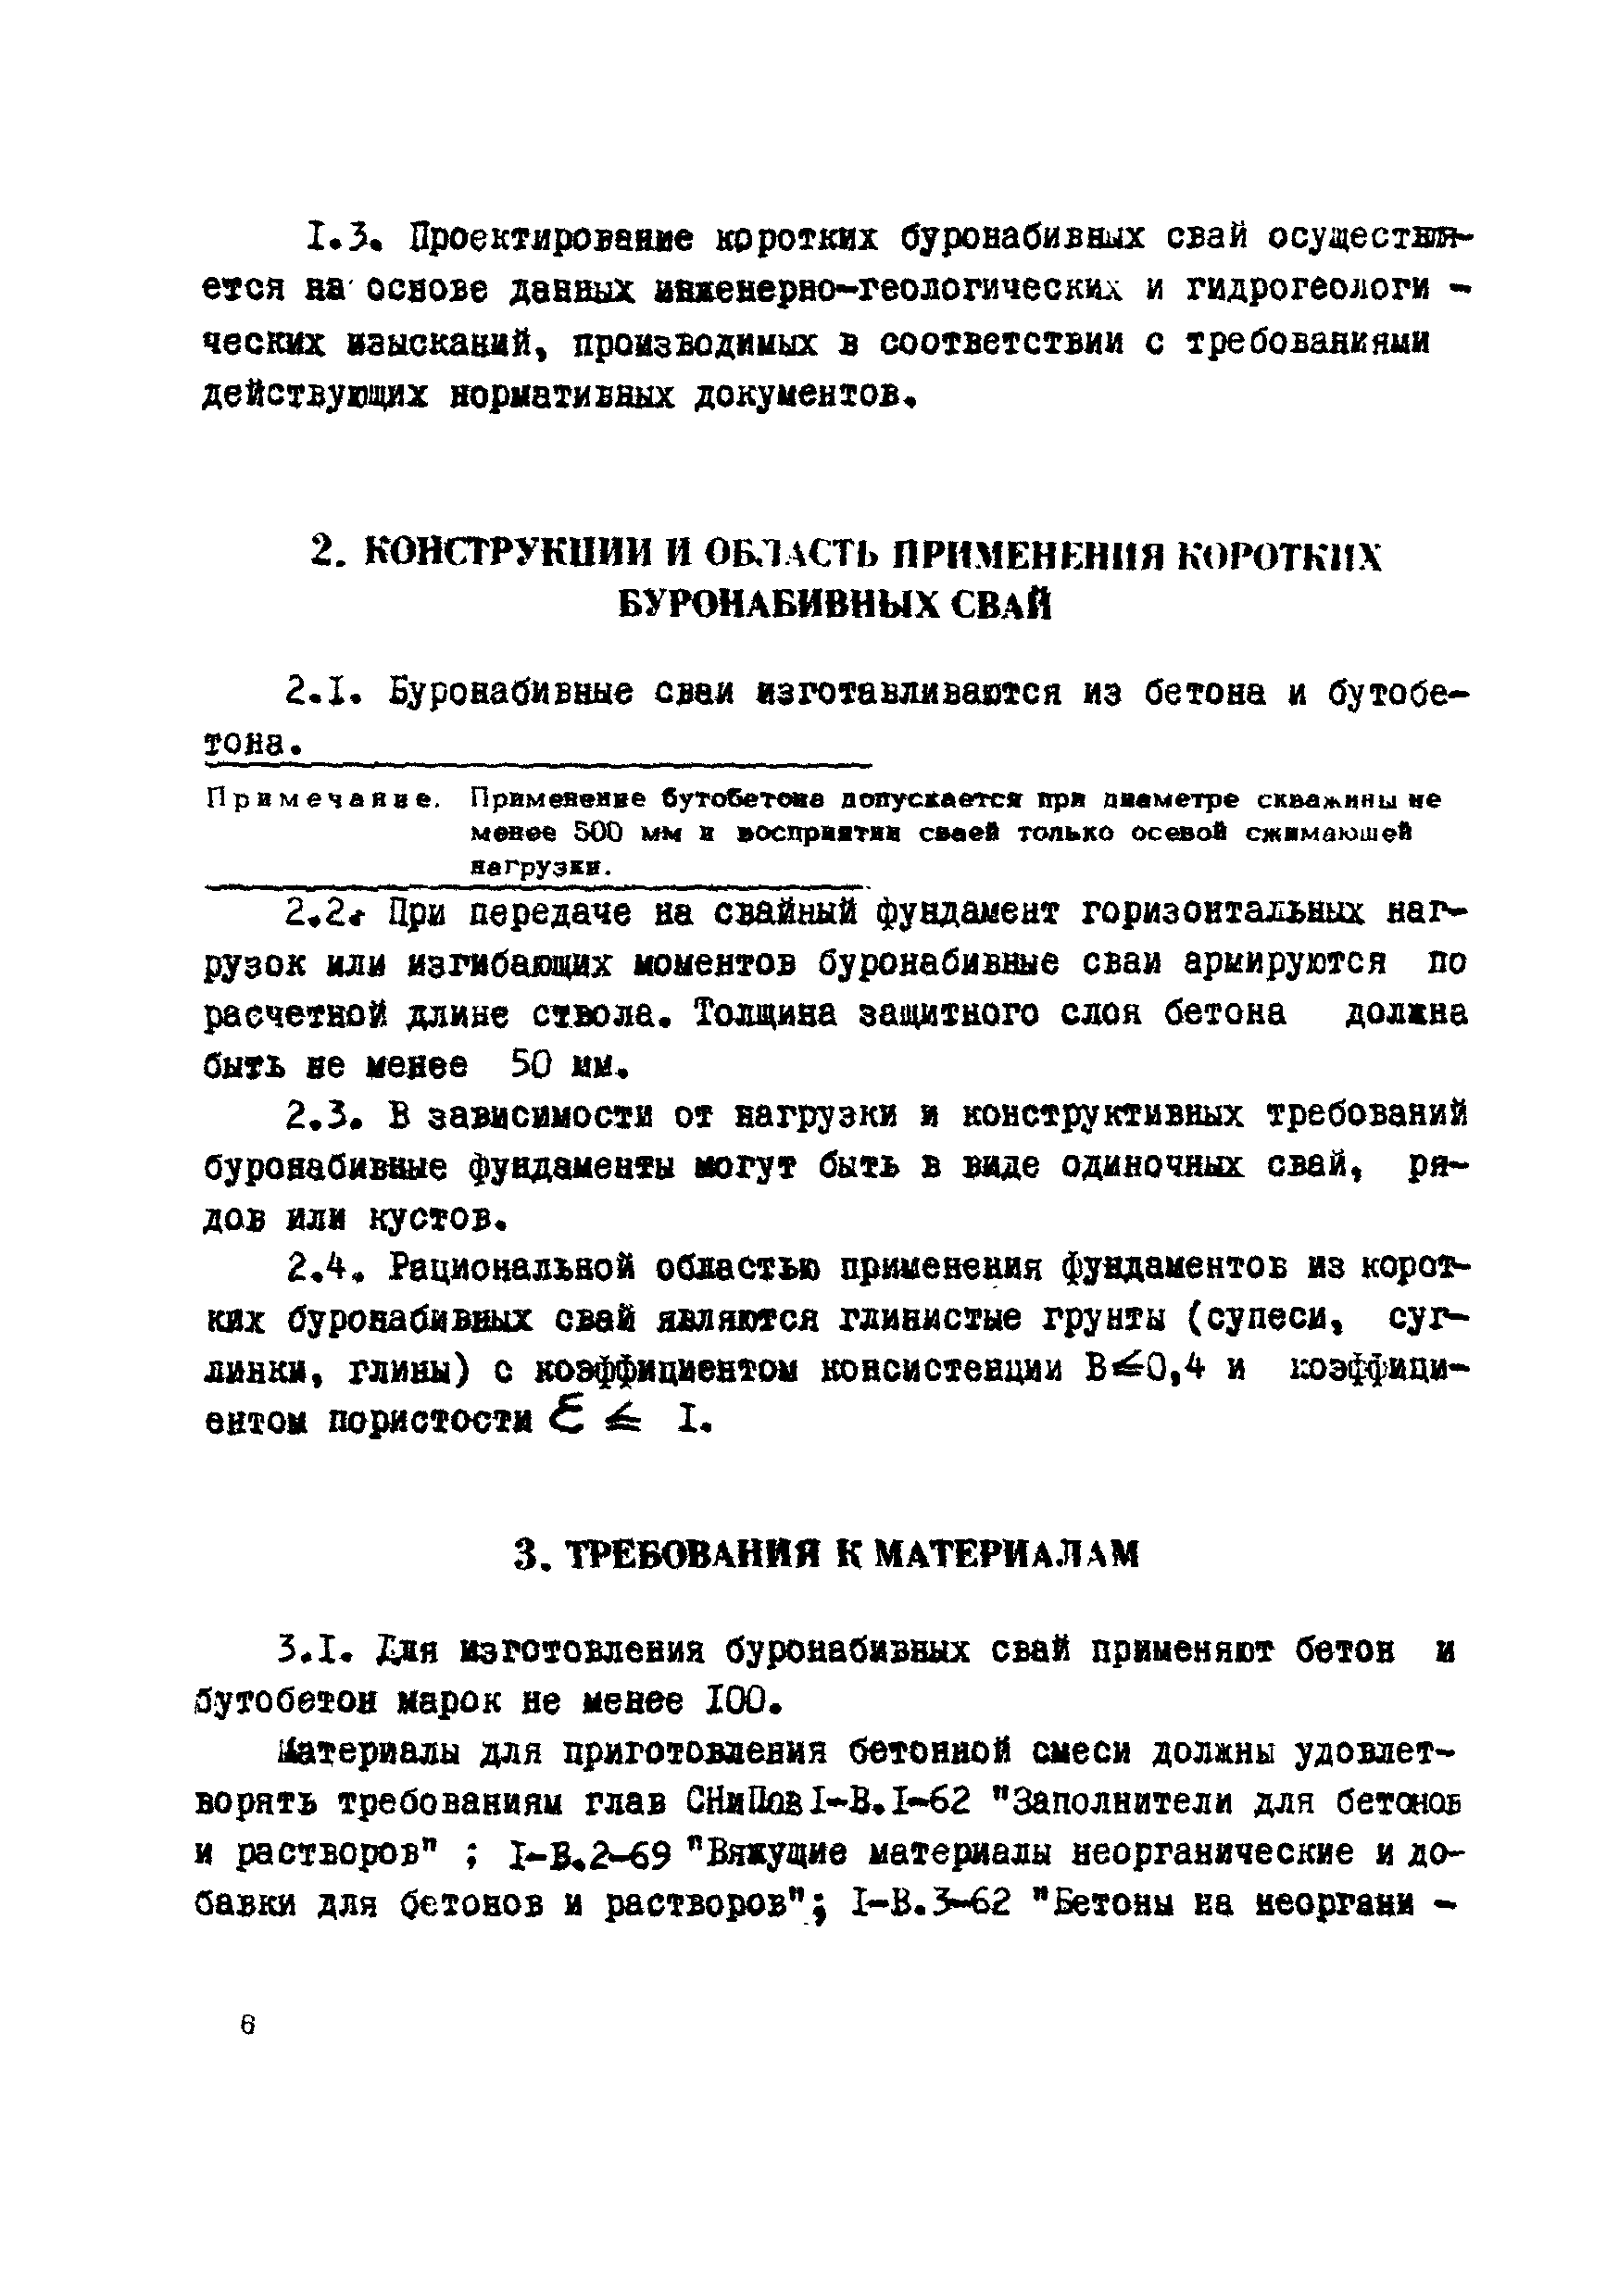 ВСН 5-71